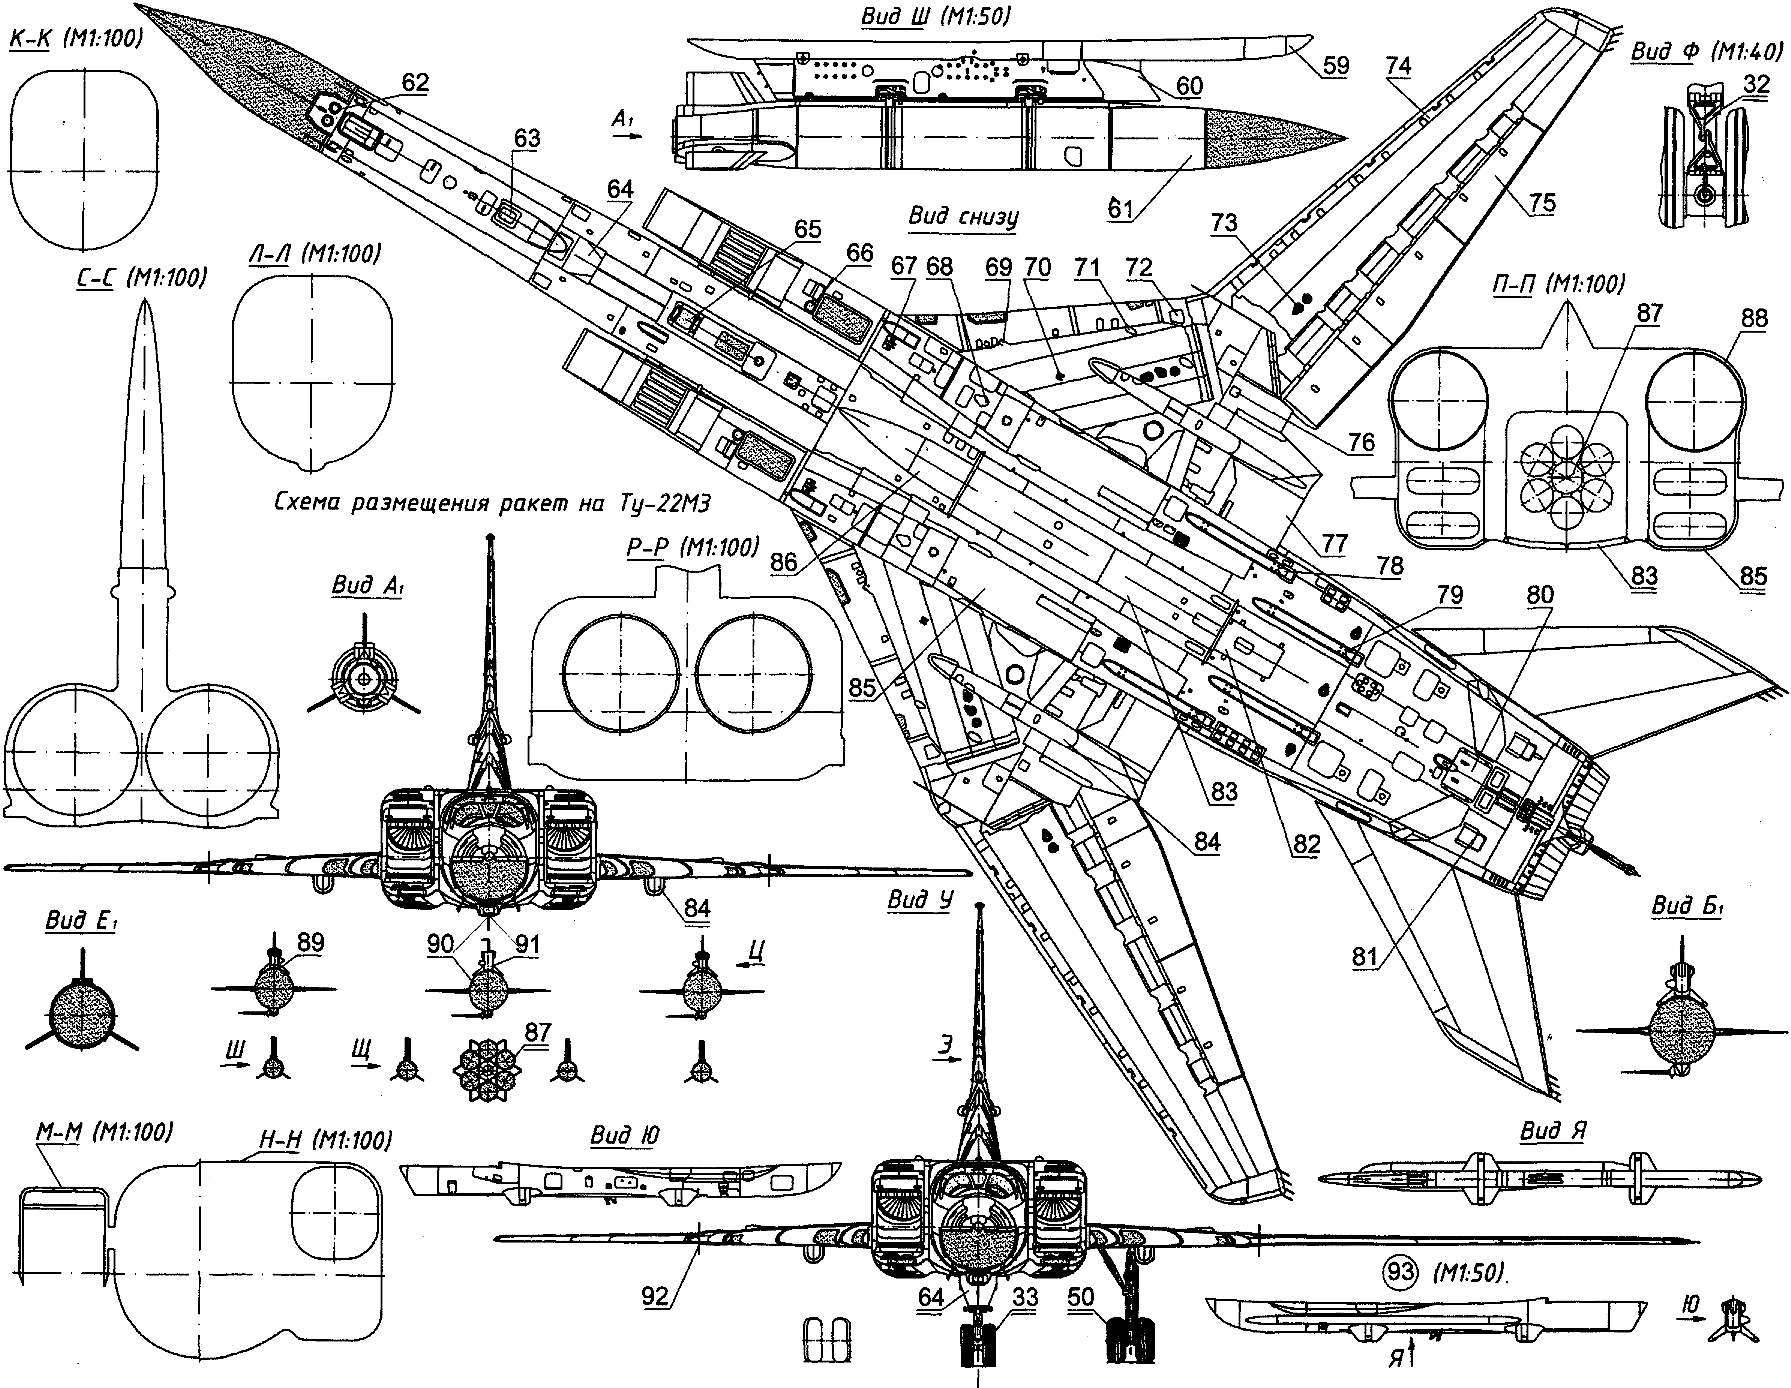 Будущее морских ракетоносцев: ту-22м или су-34 | статьи | известия